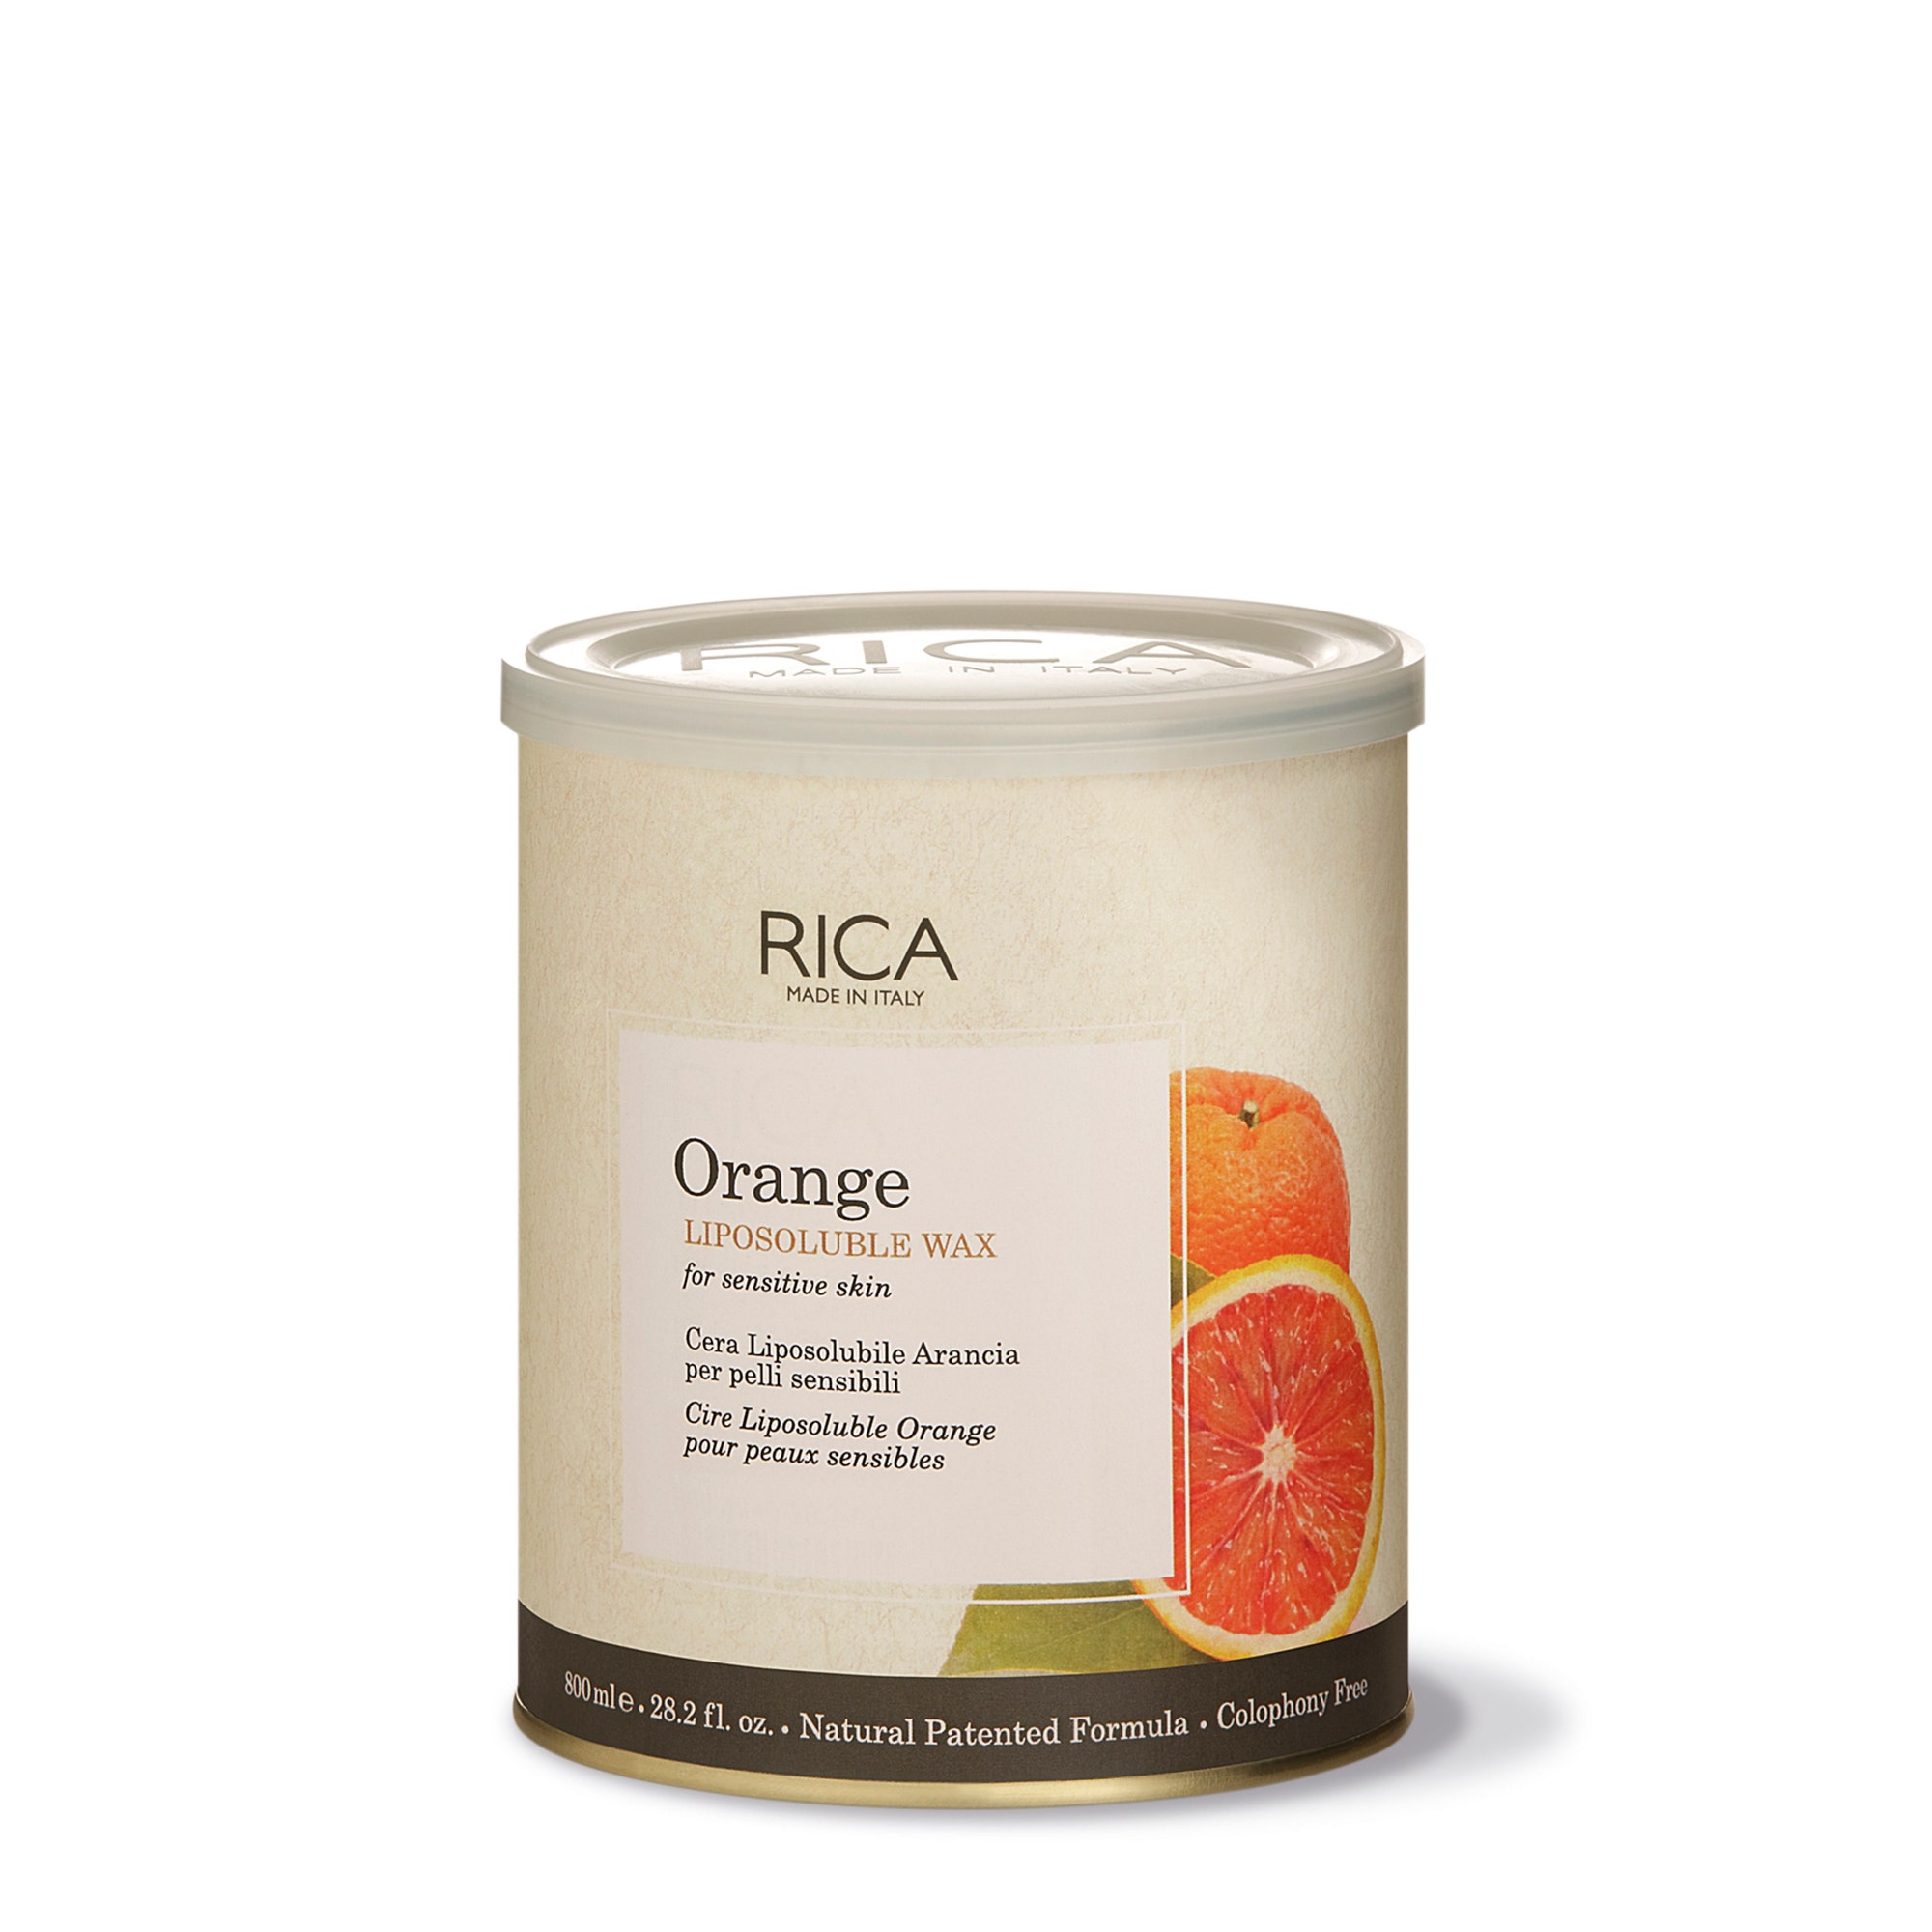 شمع البرتقال القابل للذوبان في الدهون من ريكا كوزماتيكس